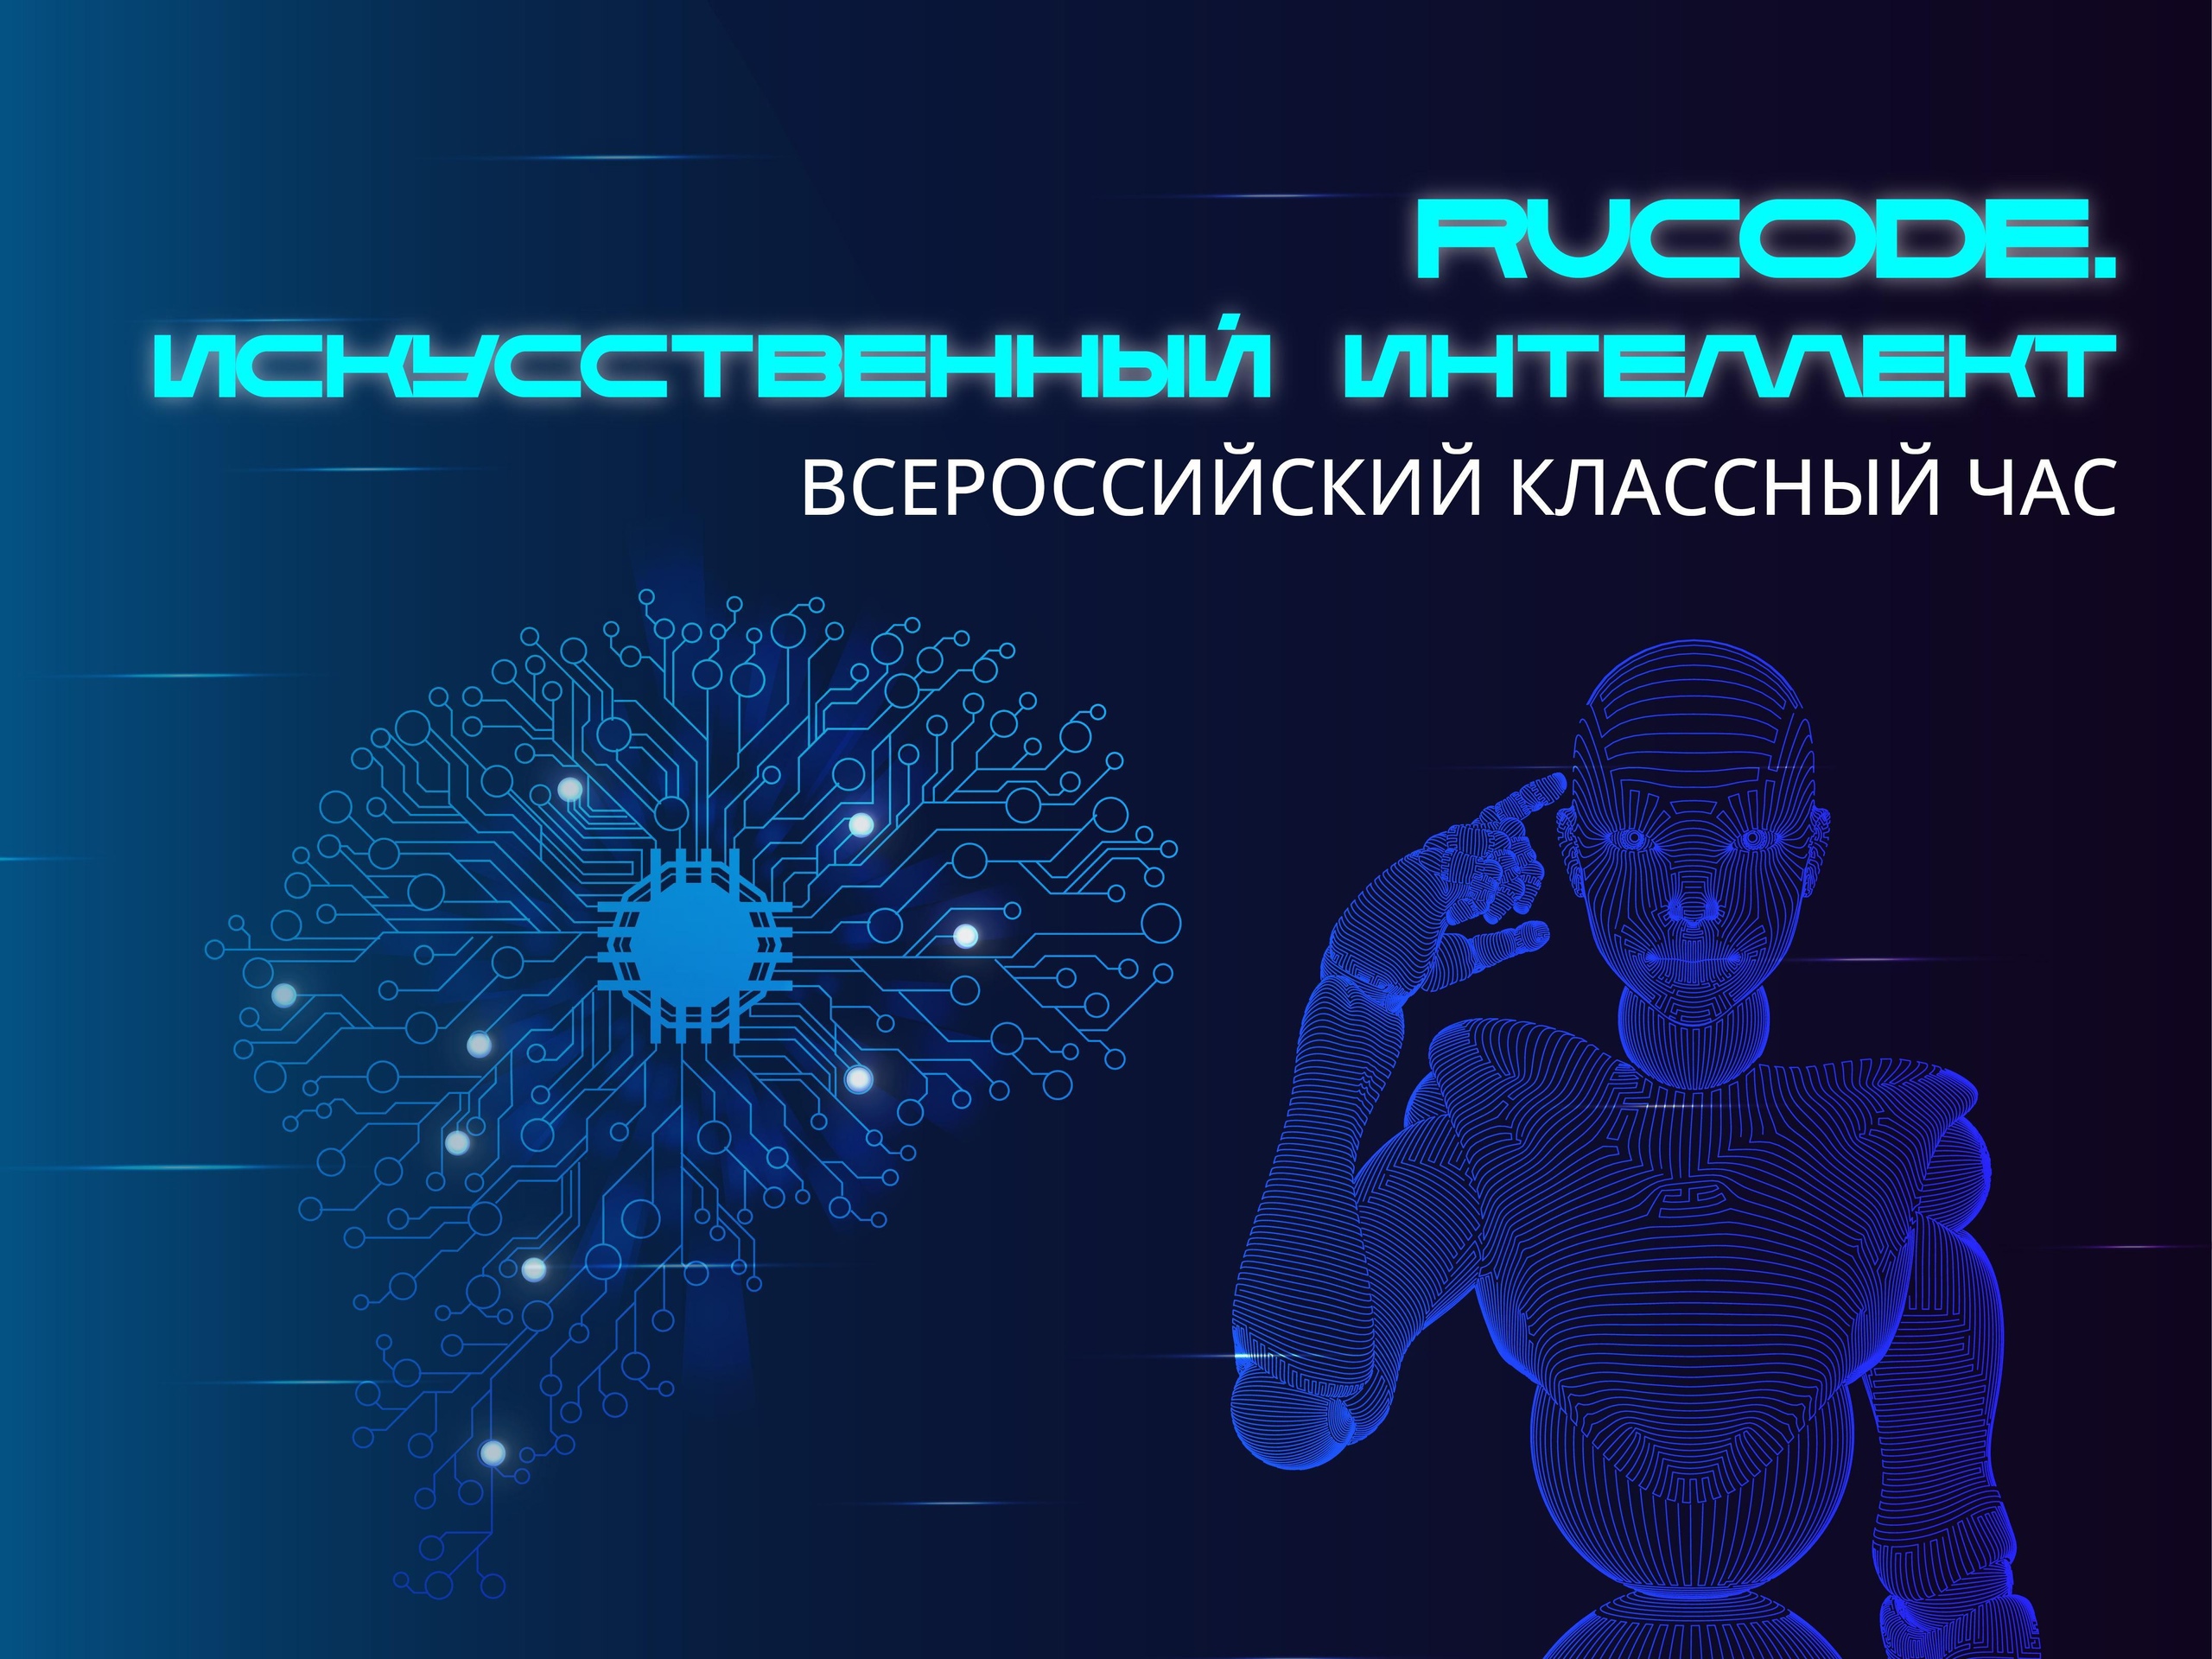 Всероссийский классный час &amp;quot;RuCode&amp;quot;.